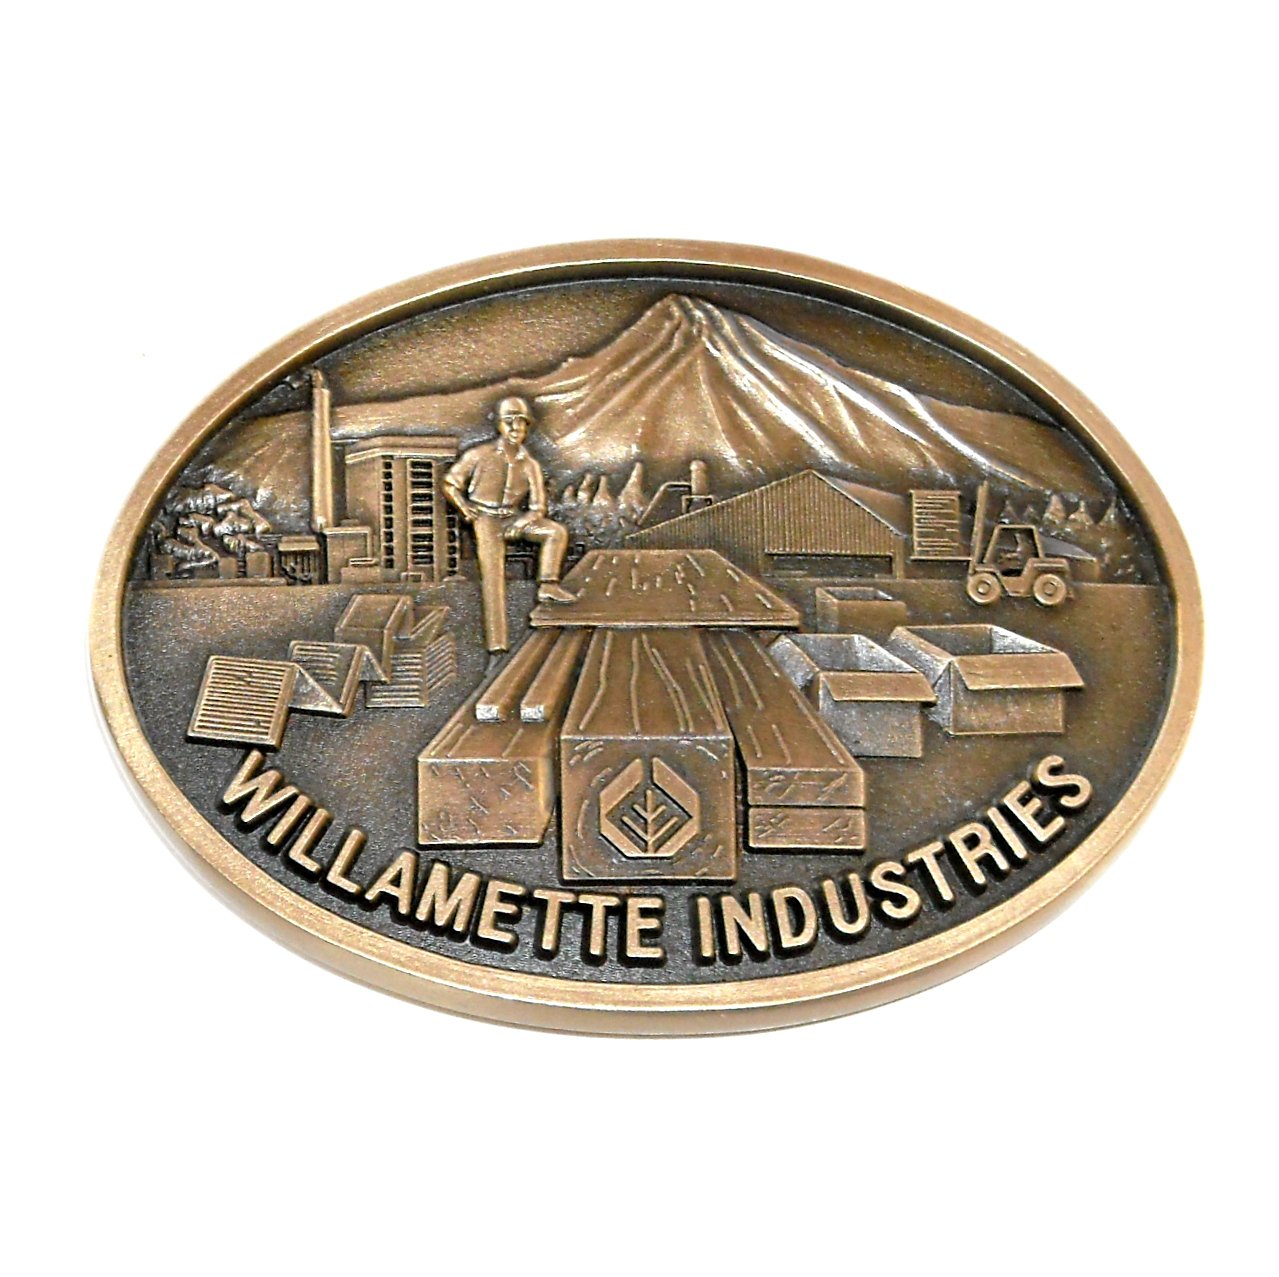 Willamette Industries Portland Oregon Brass Belt Buckle